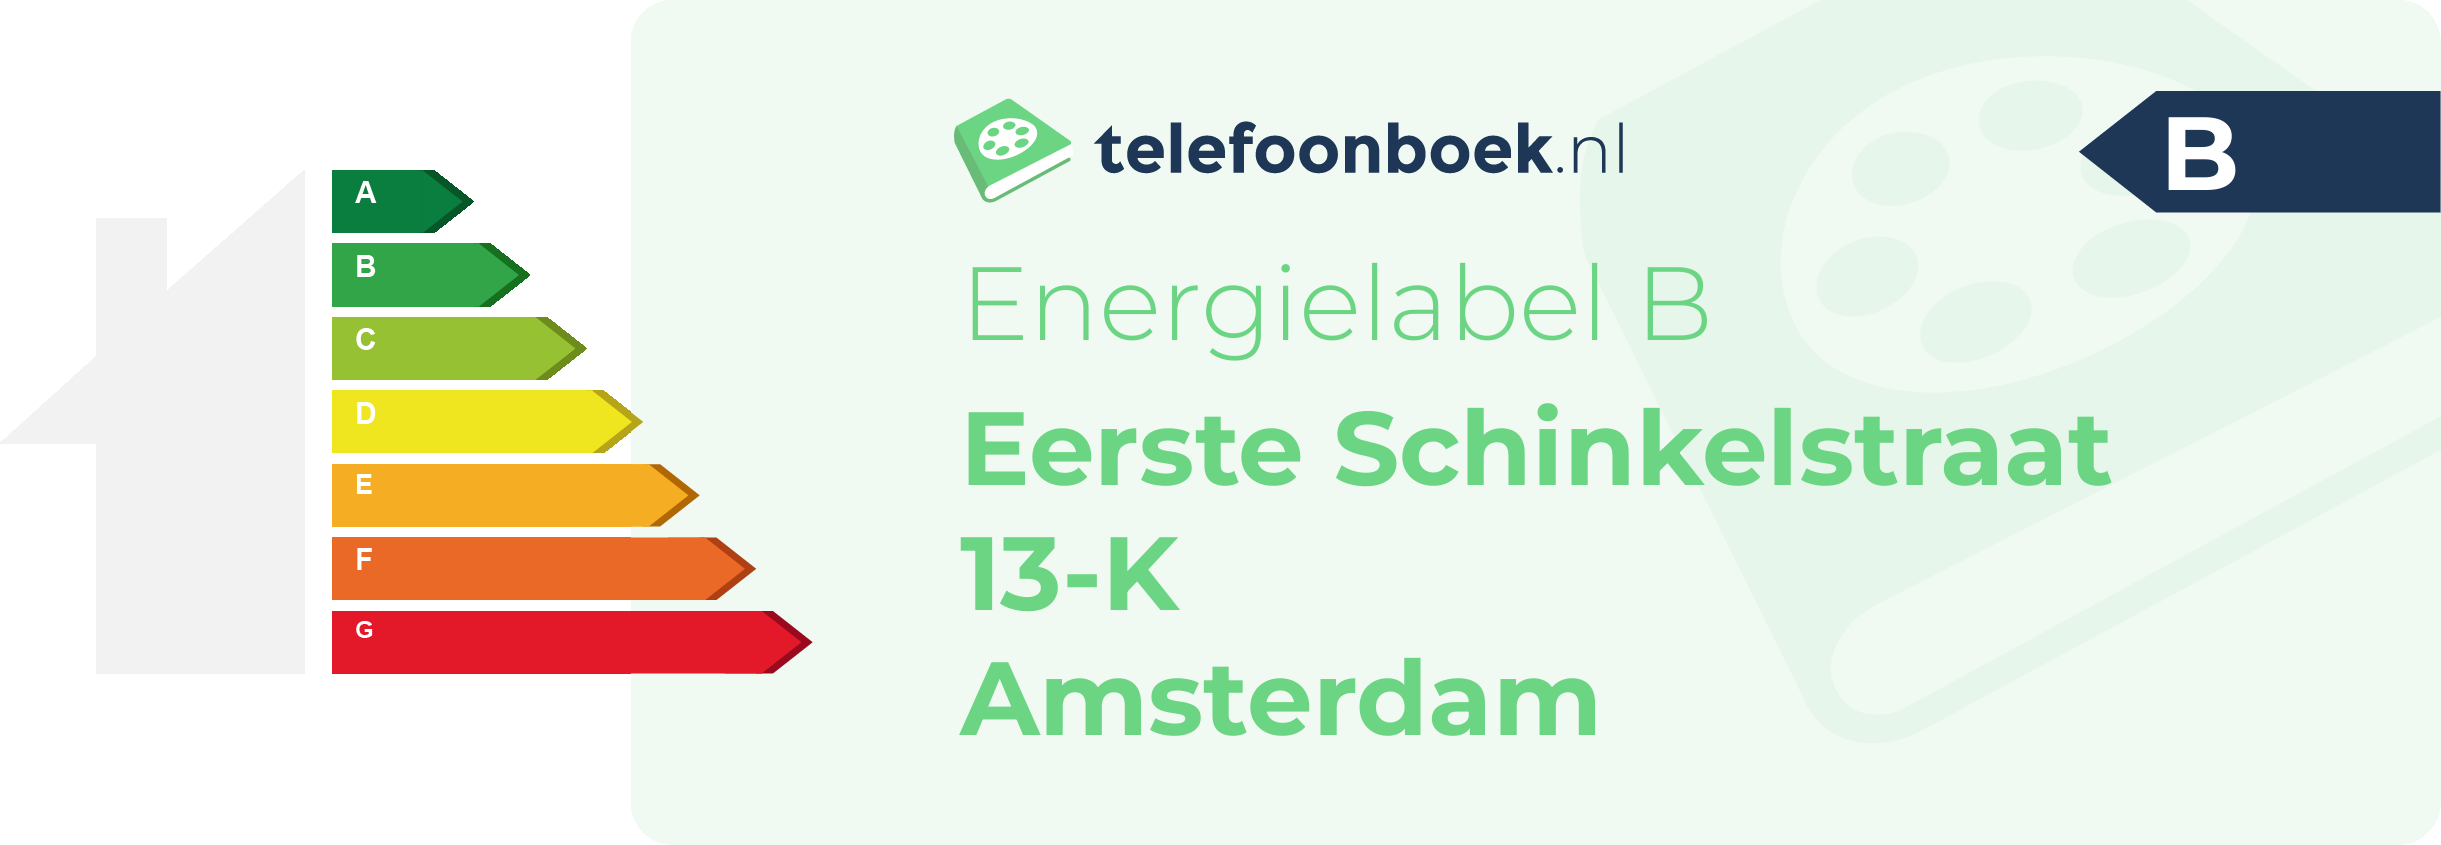 Energielabel Eerste Schinkelstraat 13-K Amsterdam